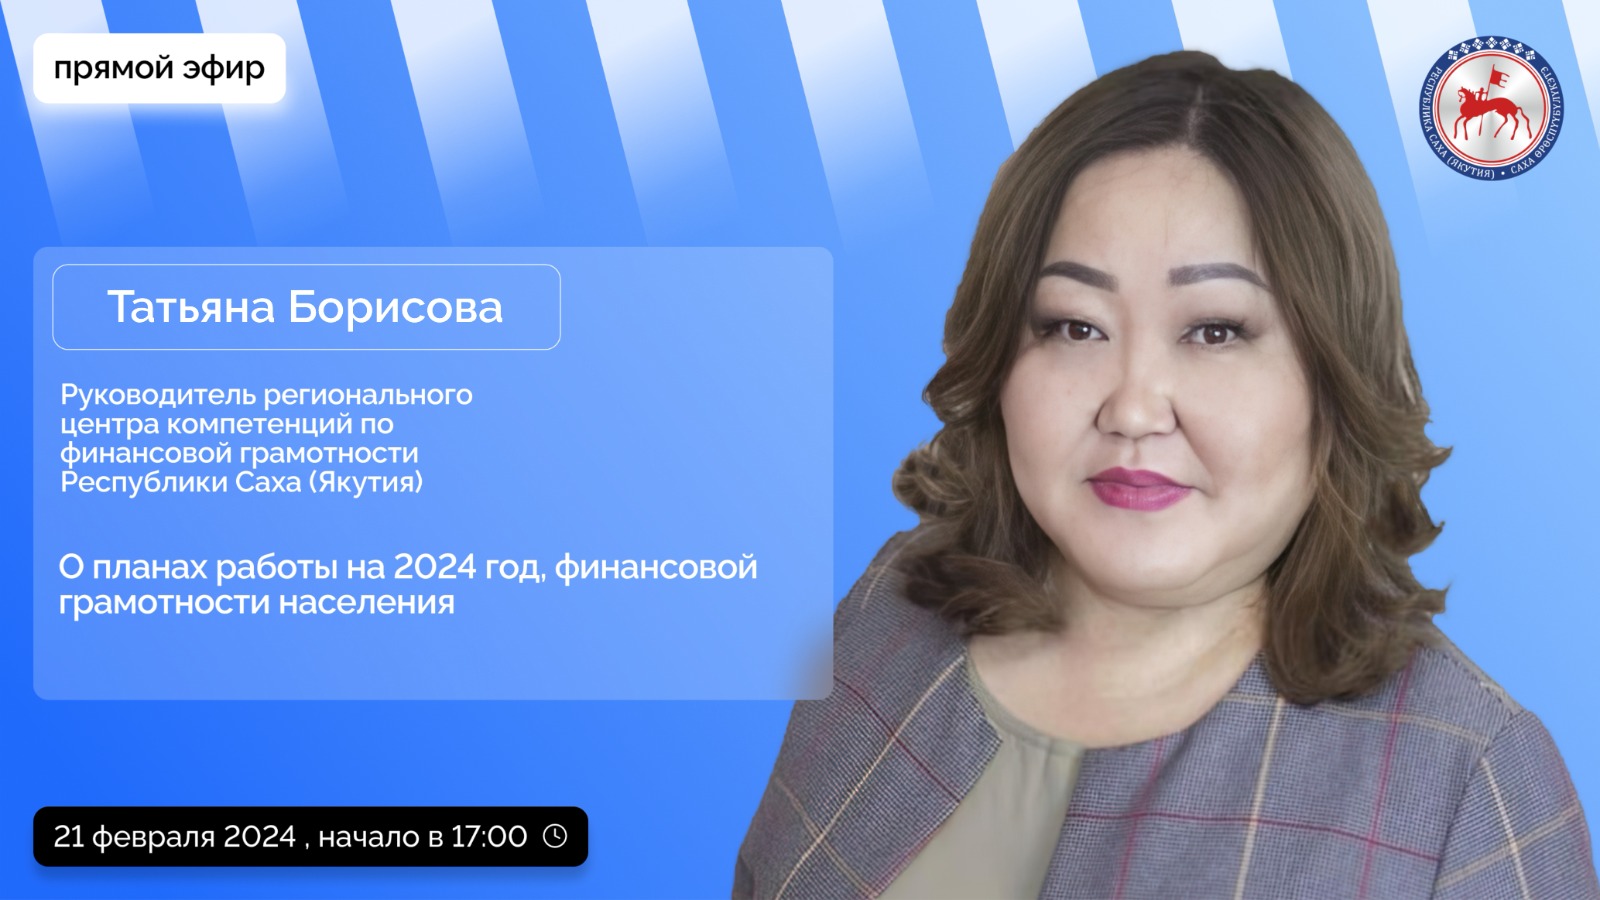 Руководитель центра компетенций по финграмотности ответит на вопросы якутян в прямом эфире соцсетей